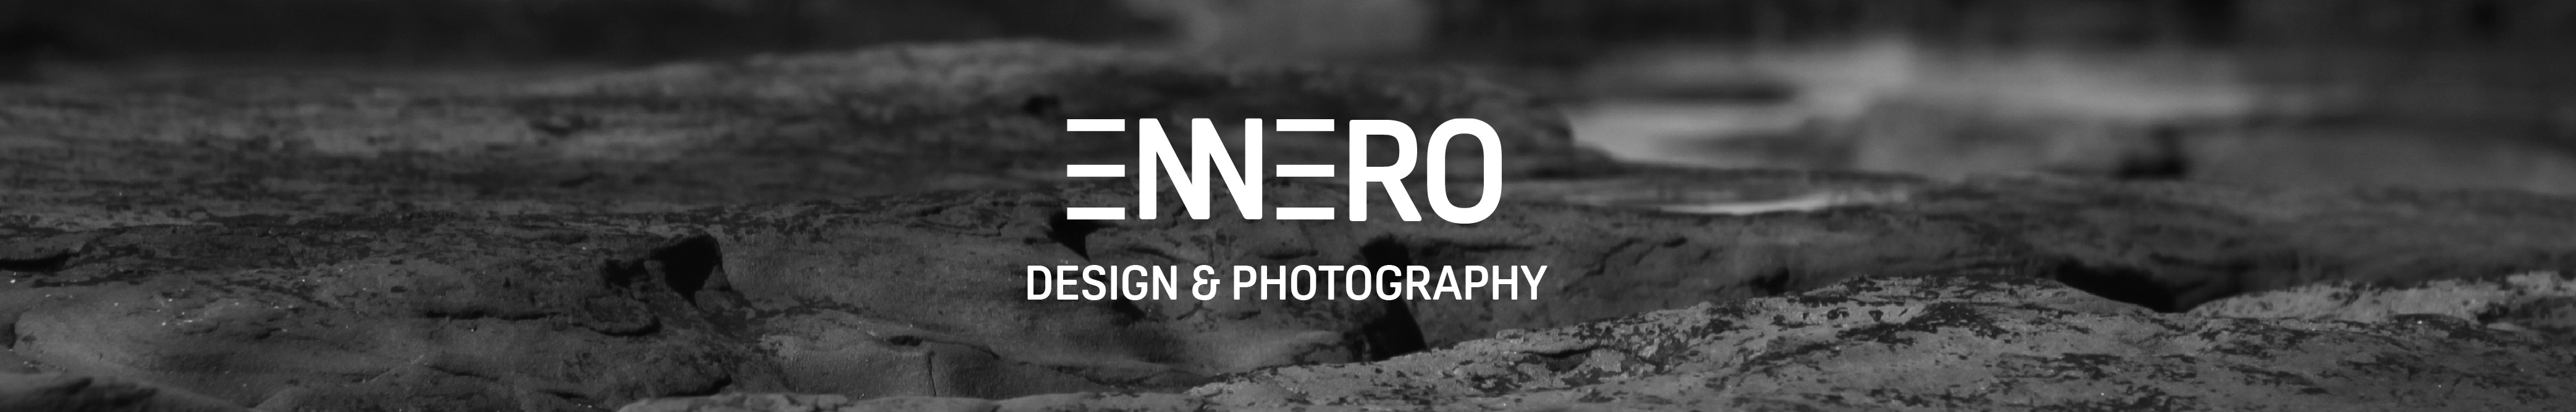 Ennero Design's profile banner